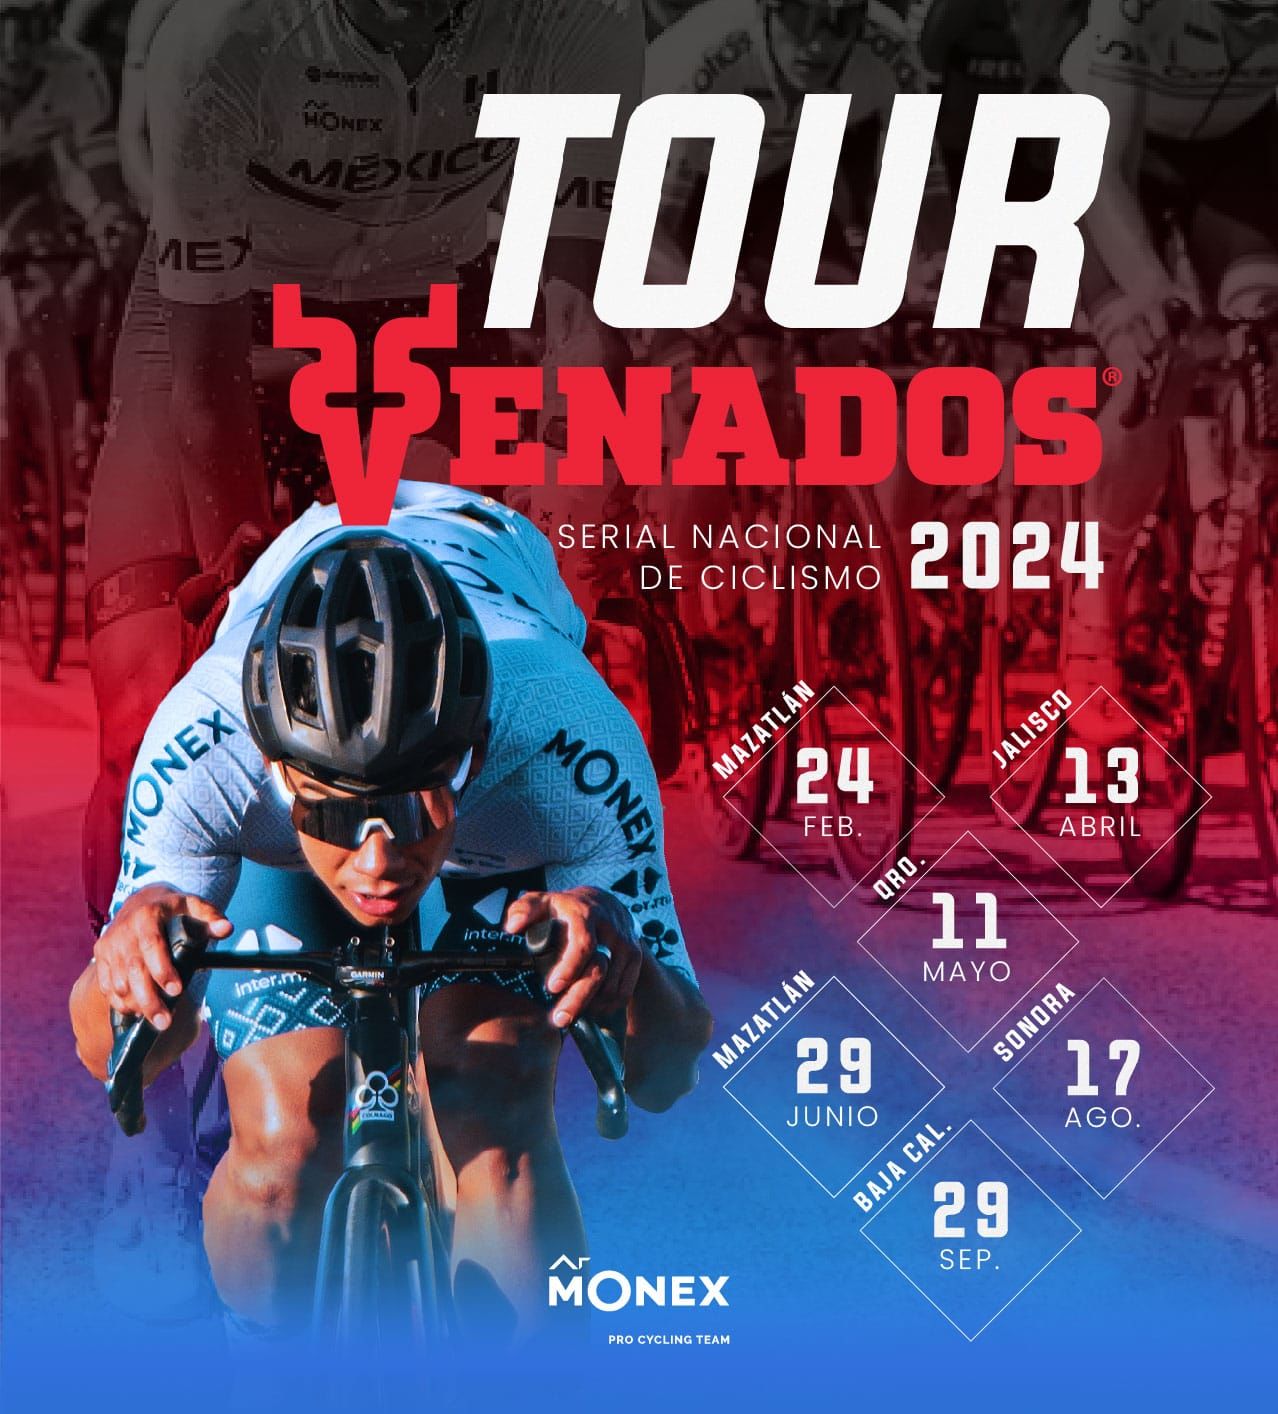 Los detalles sobre el Tour Venados Serial Nacional de Ciclismo 2024